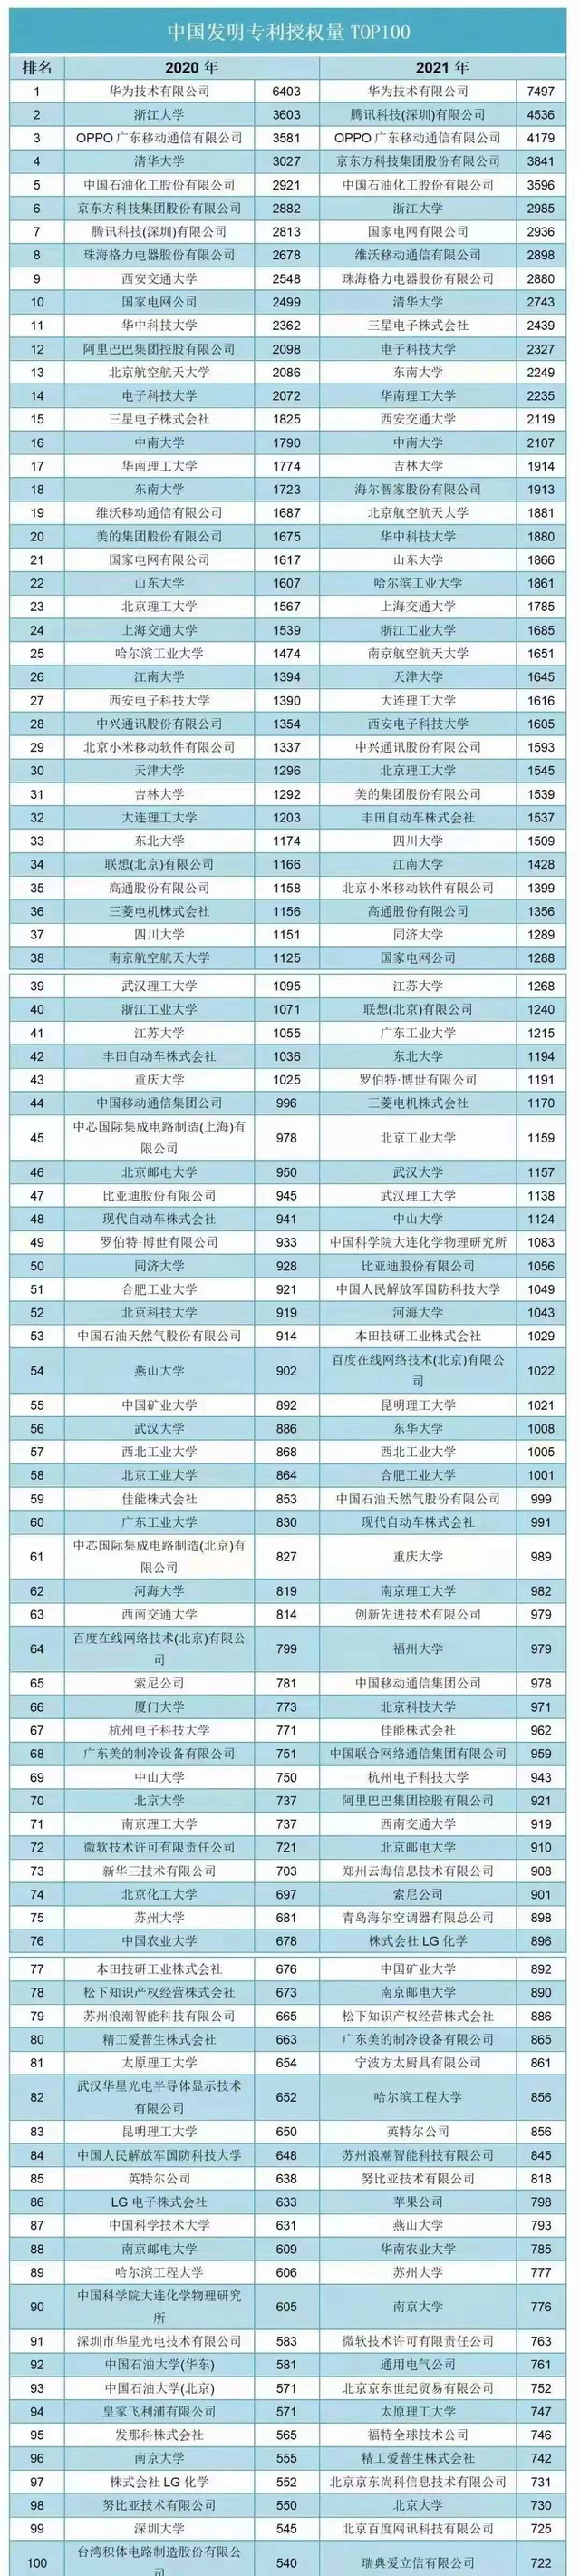 中国发明专利授权量前100名榜单，可以看出什么